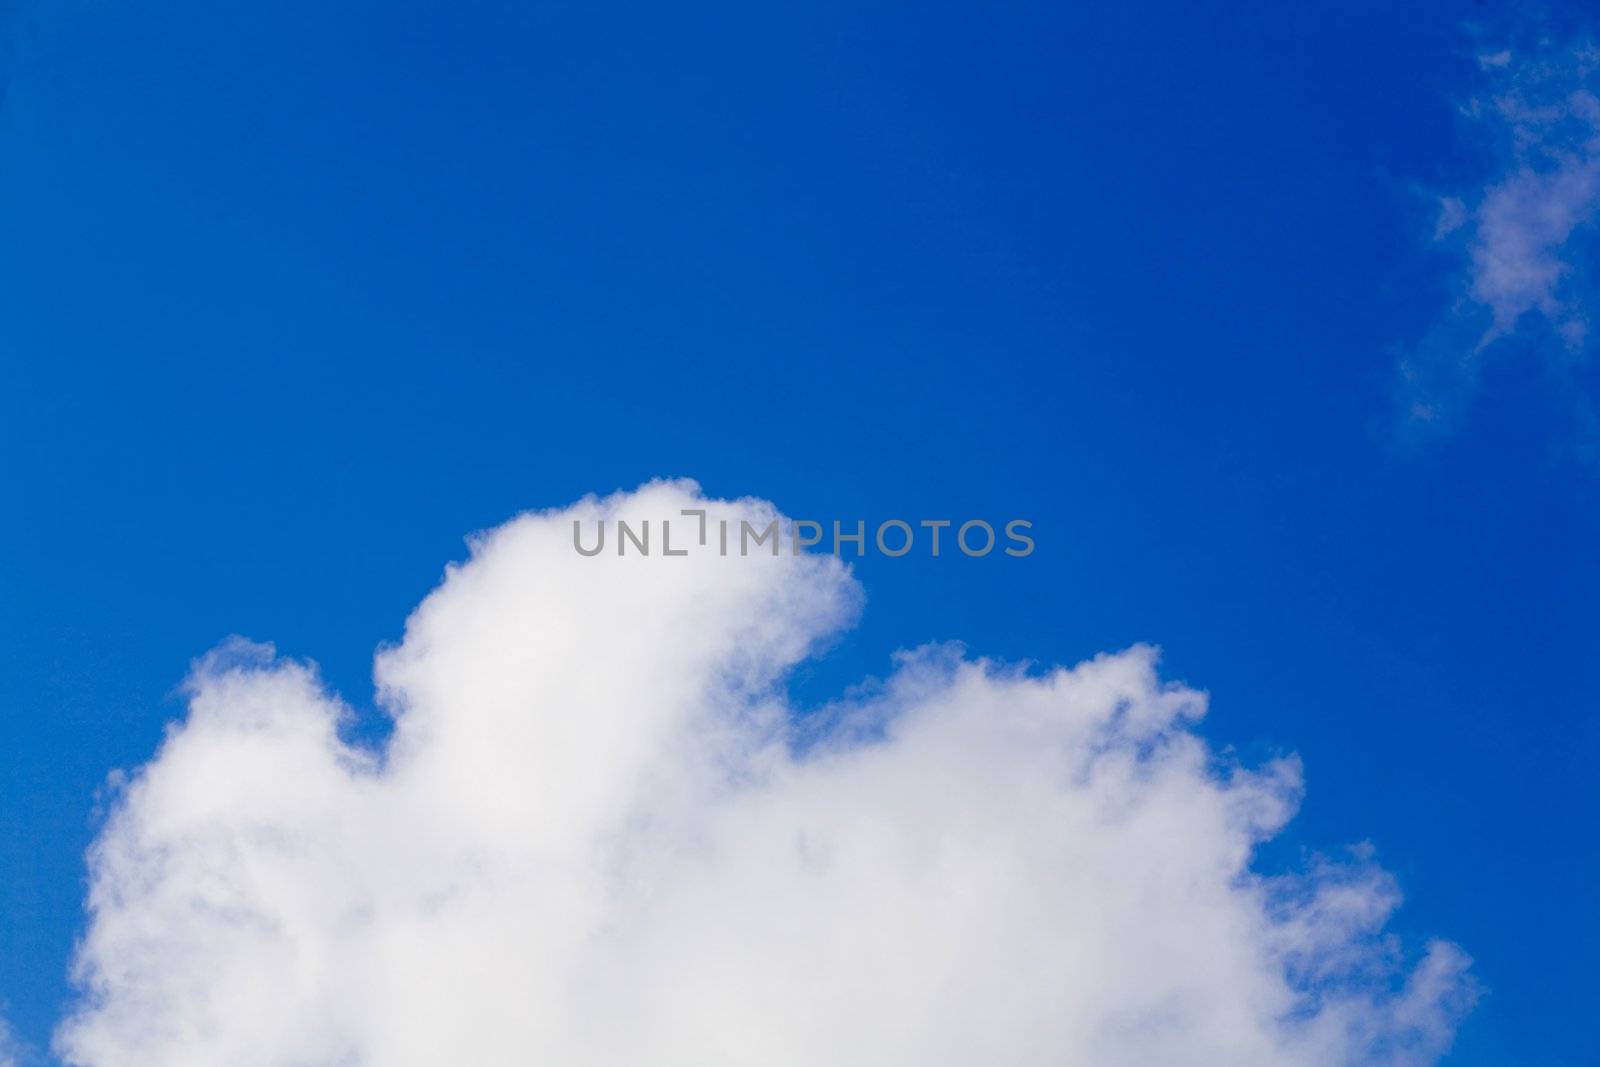 Clouds on sky by velkol